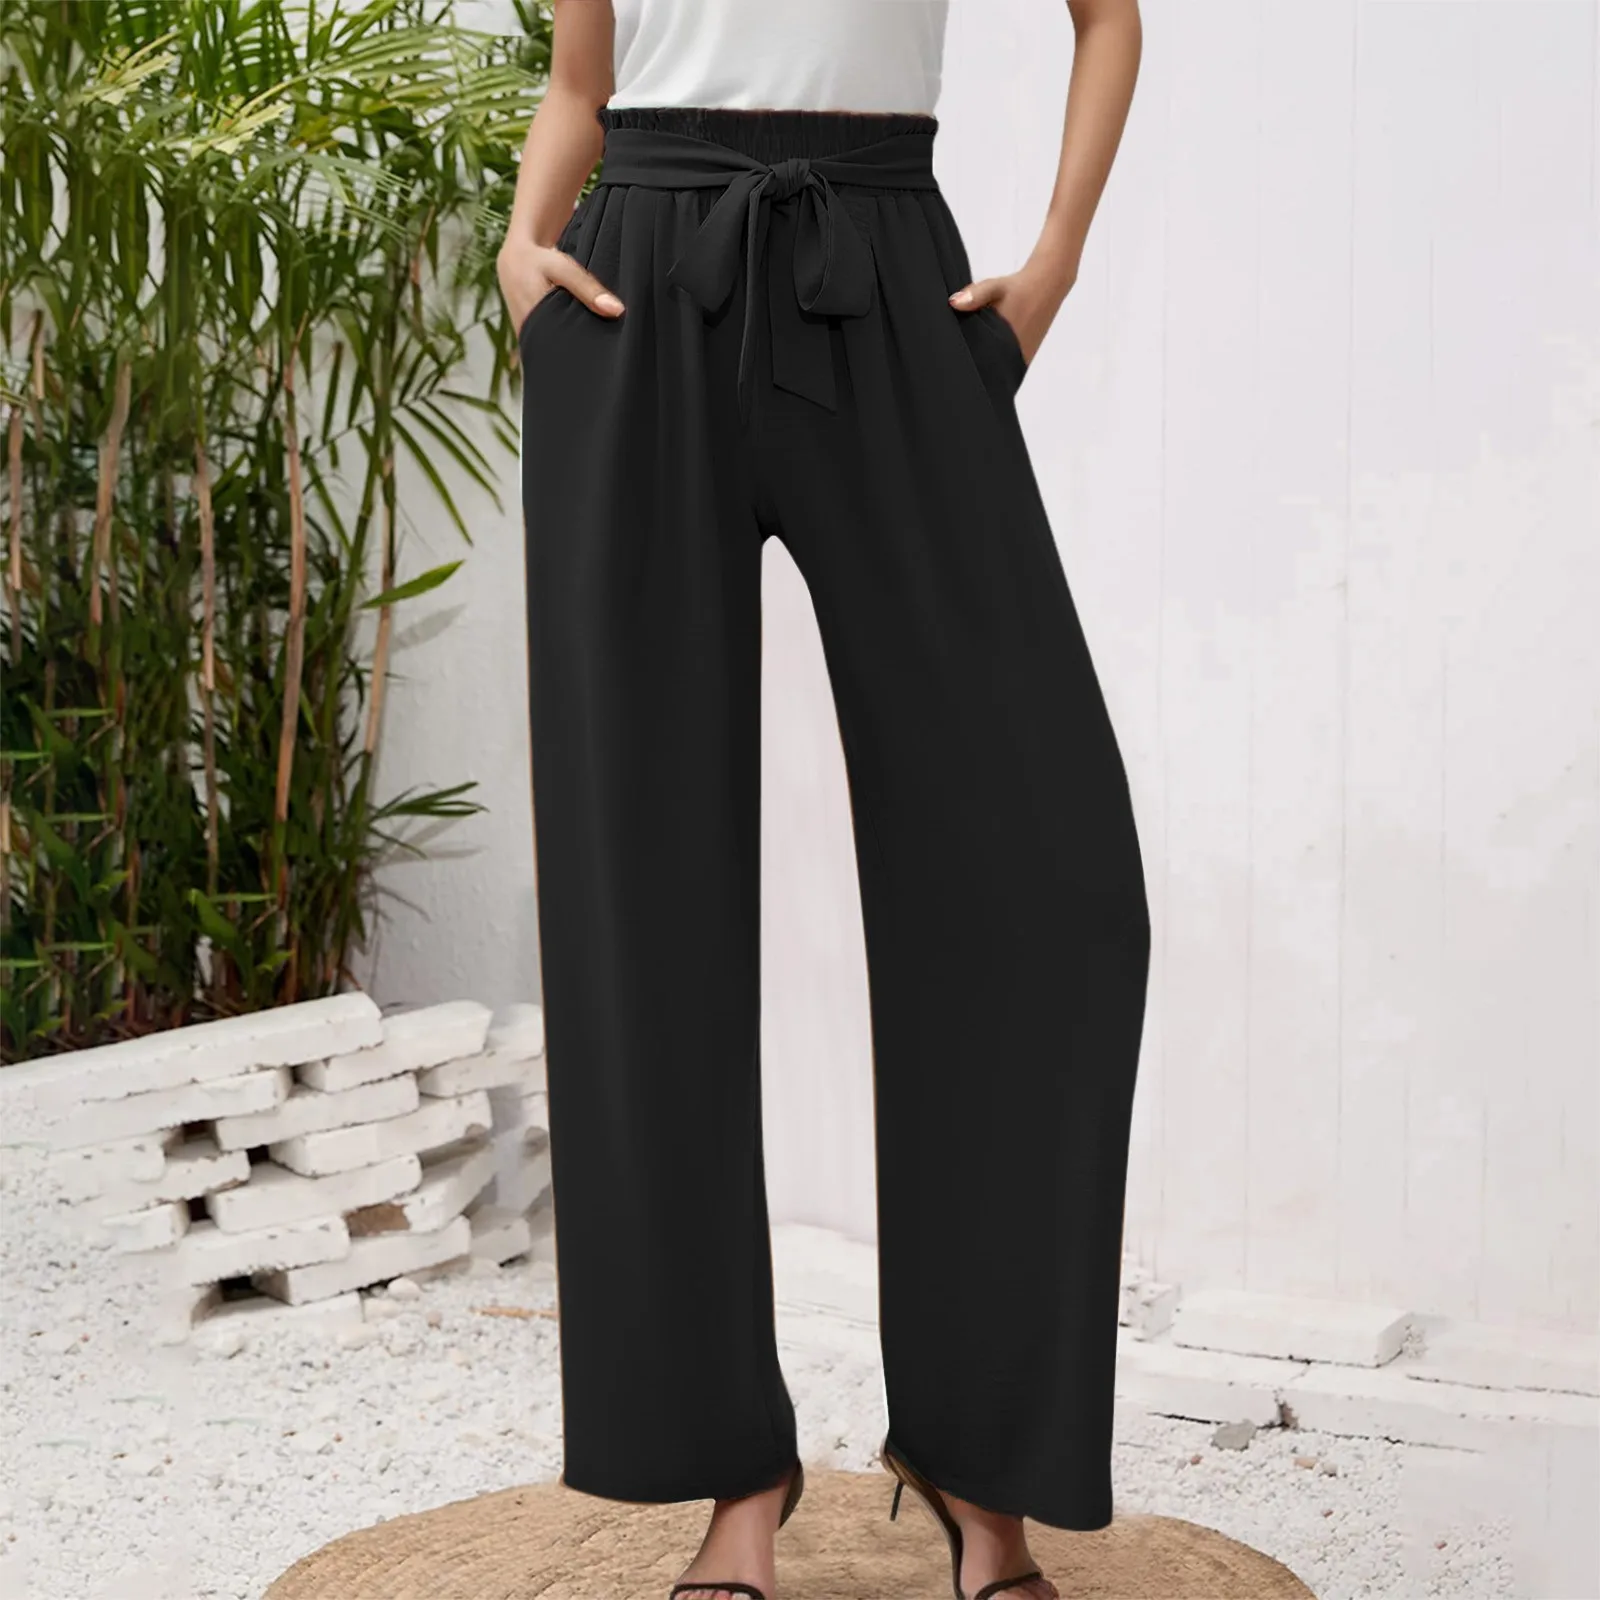 Pantalones anchos de cintura alta con lazo en negro - Retro, Indie